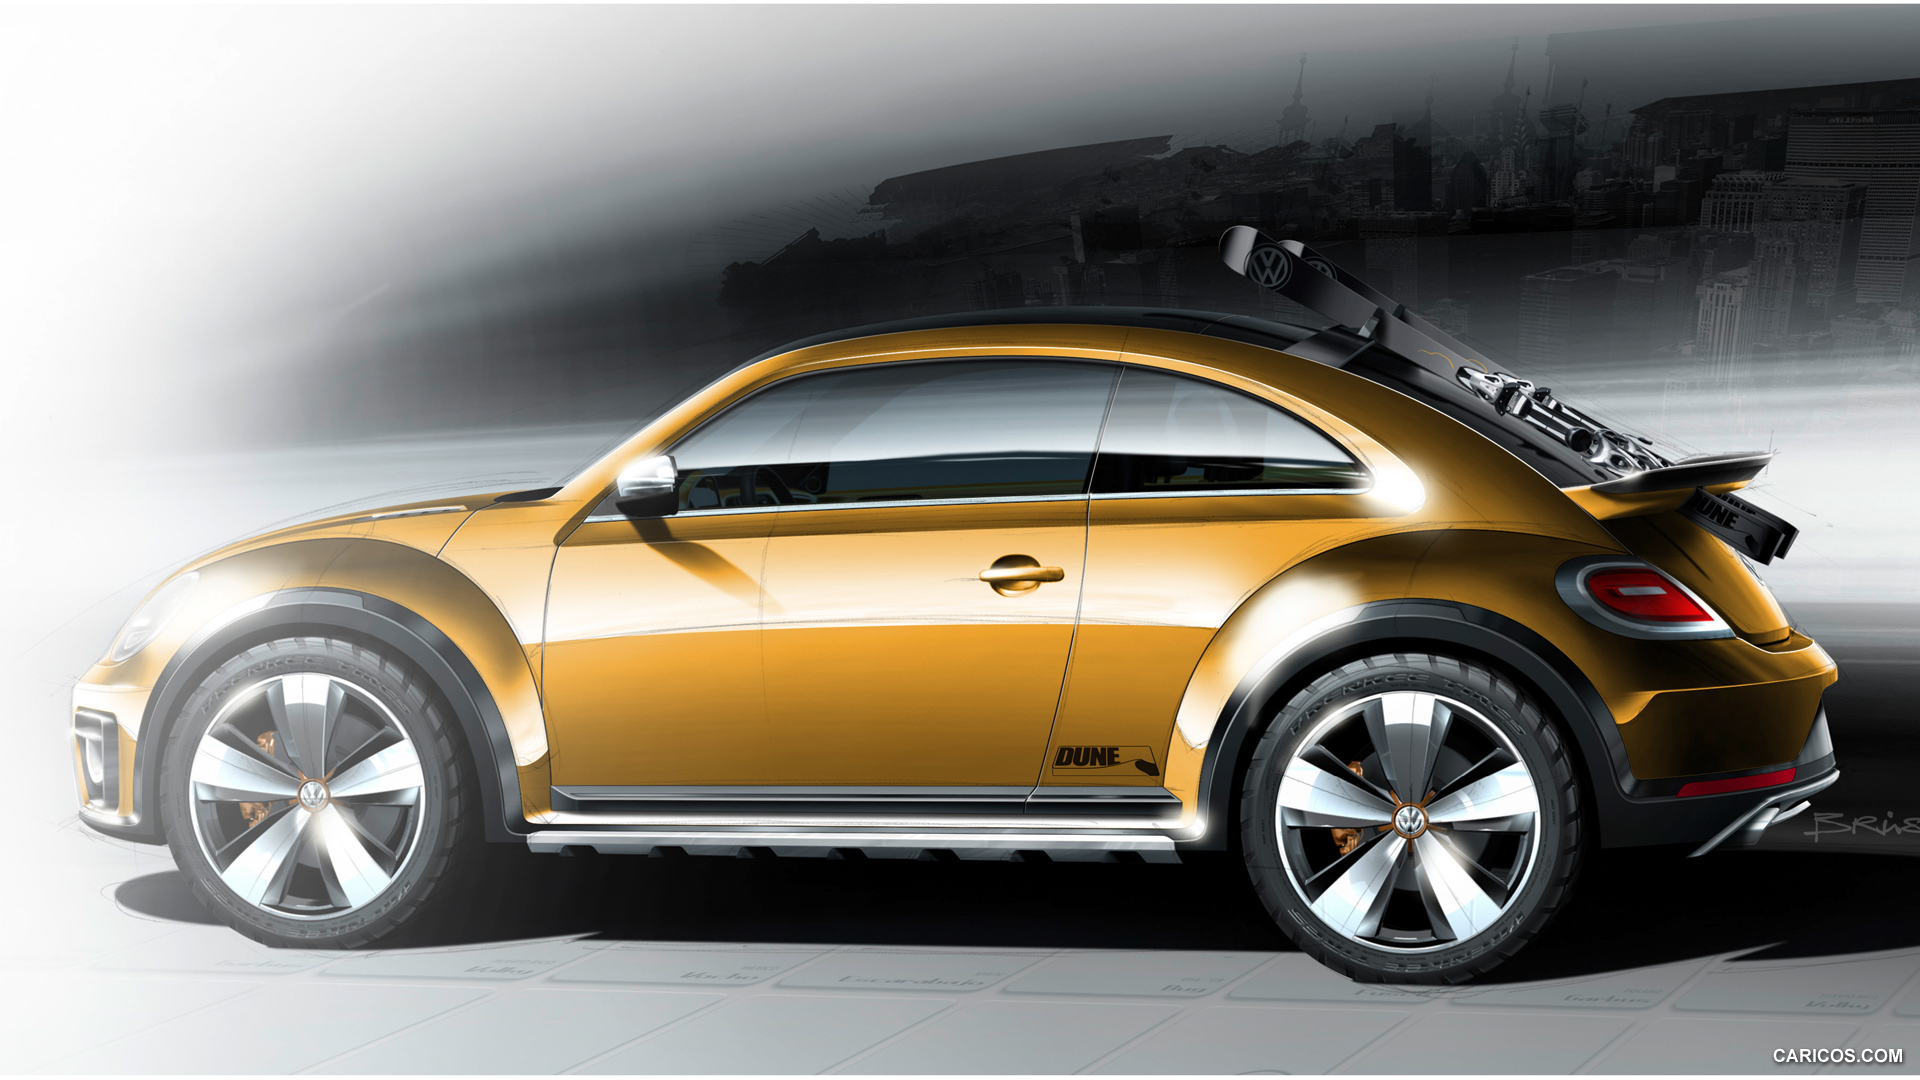 Nice Images Collection: 2014 Volkswagen Beetle Dune Concept Desktop Wallpapers